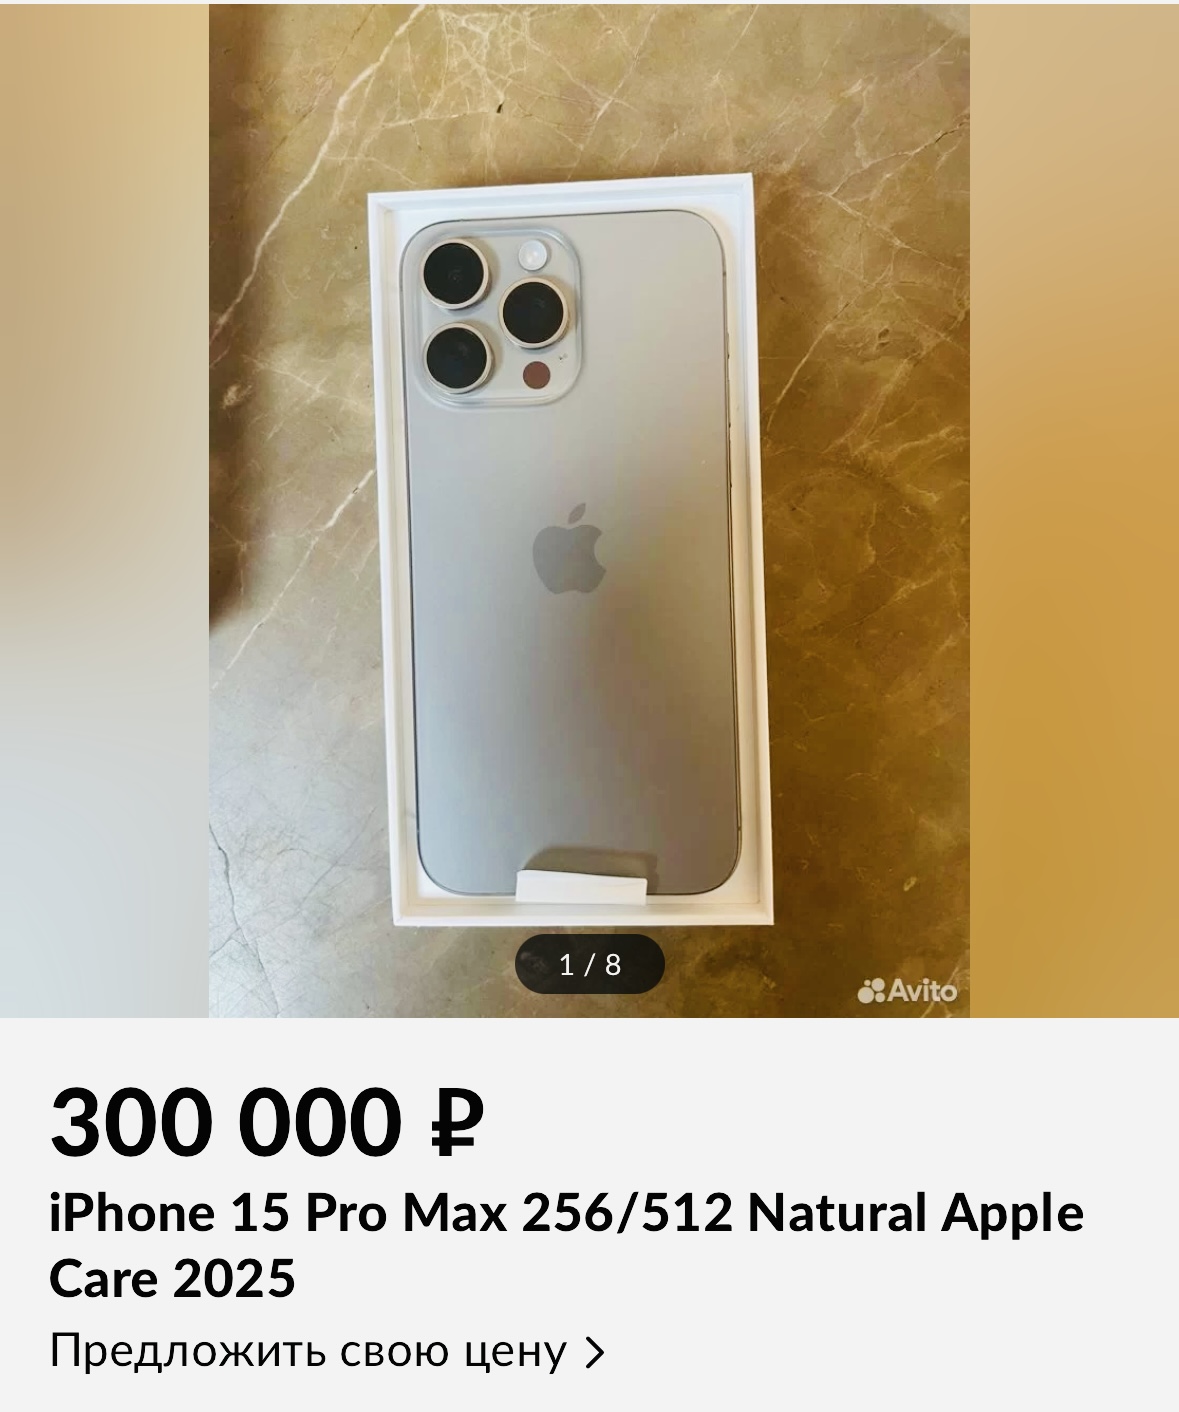 На Авито уже продают iPhone 15. Цены достигают 300 тысяч